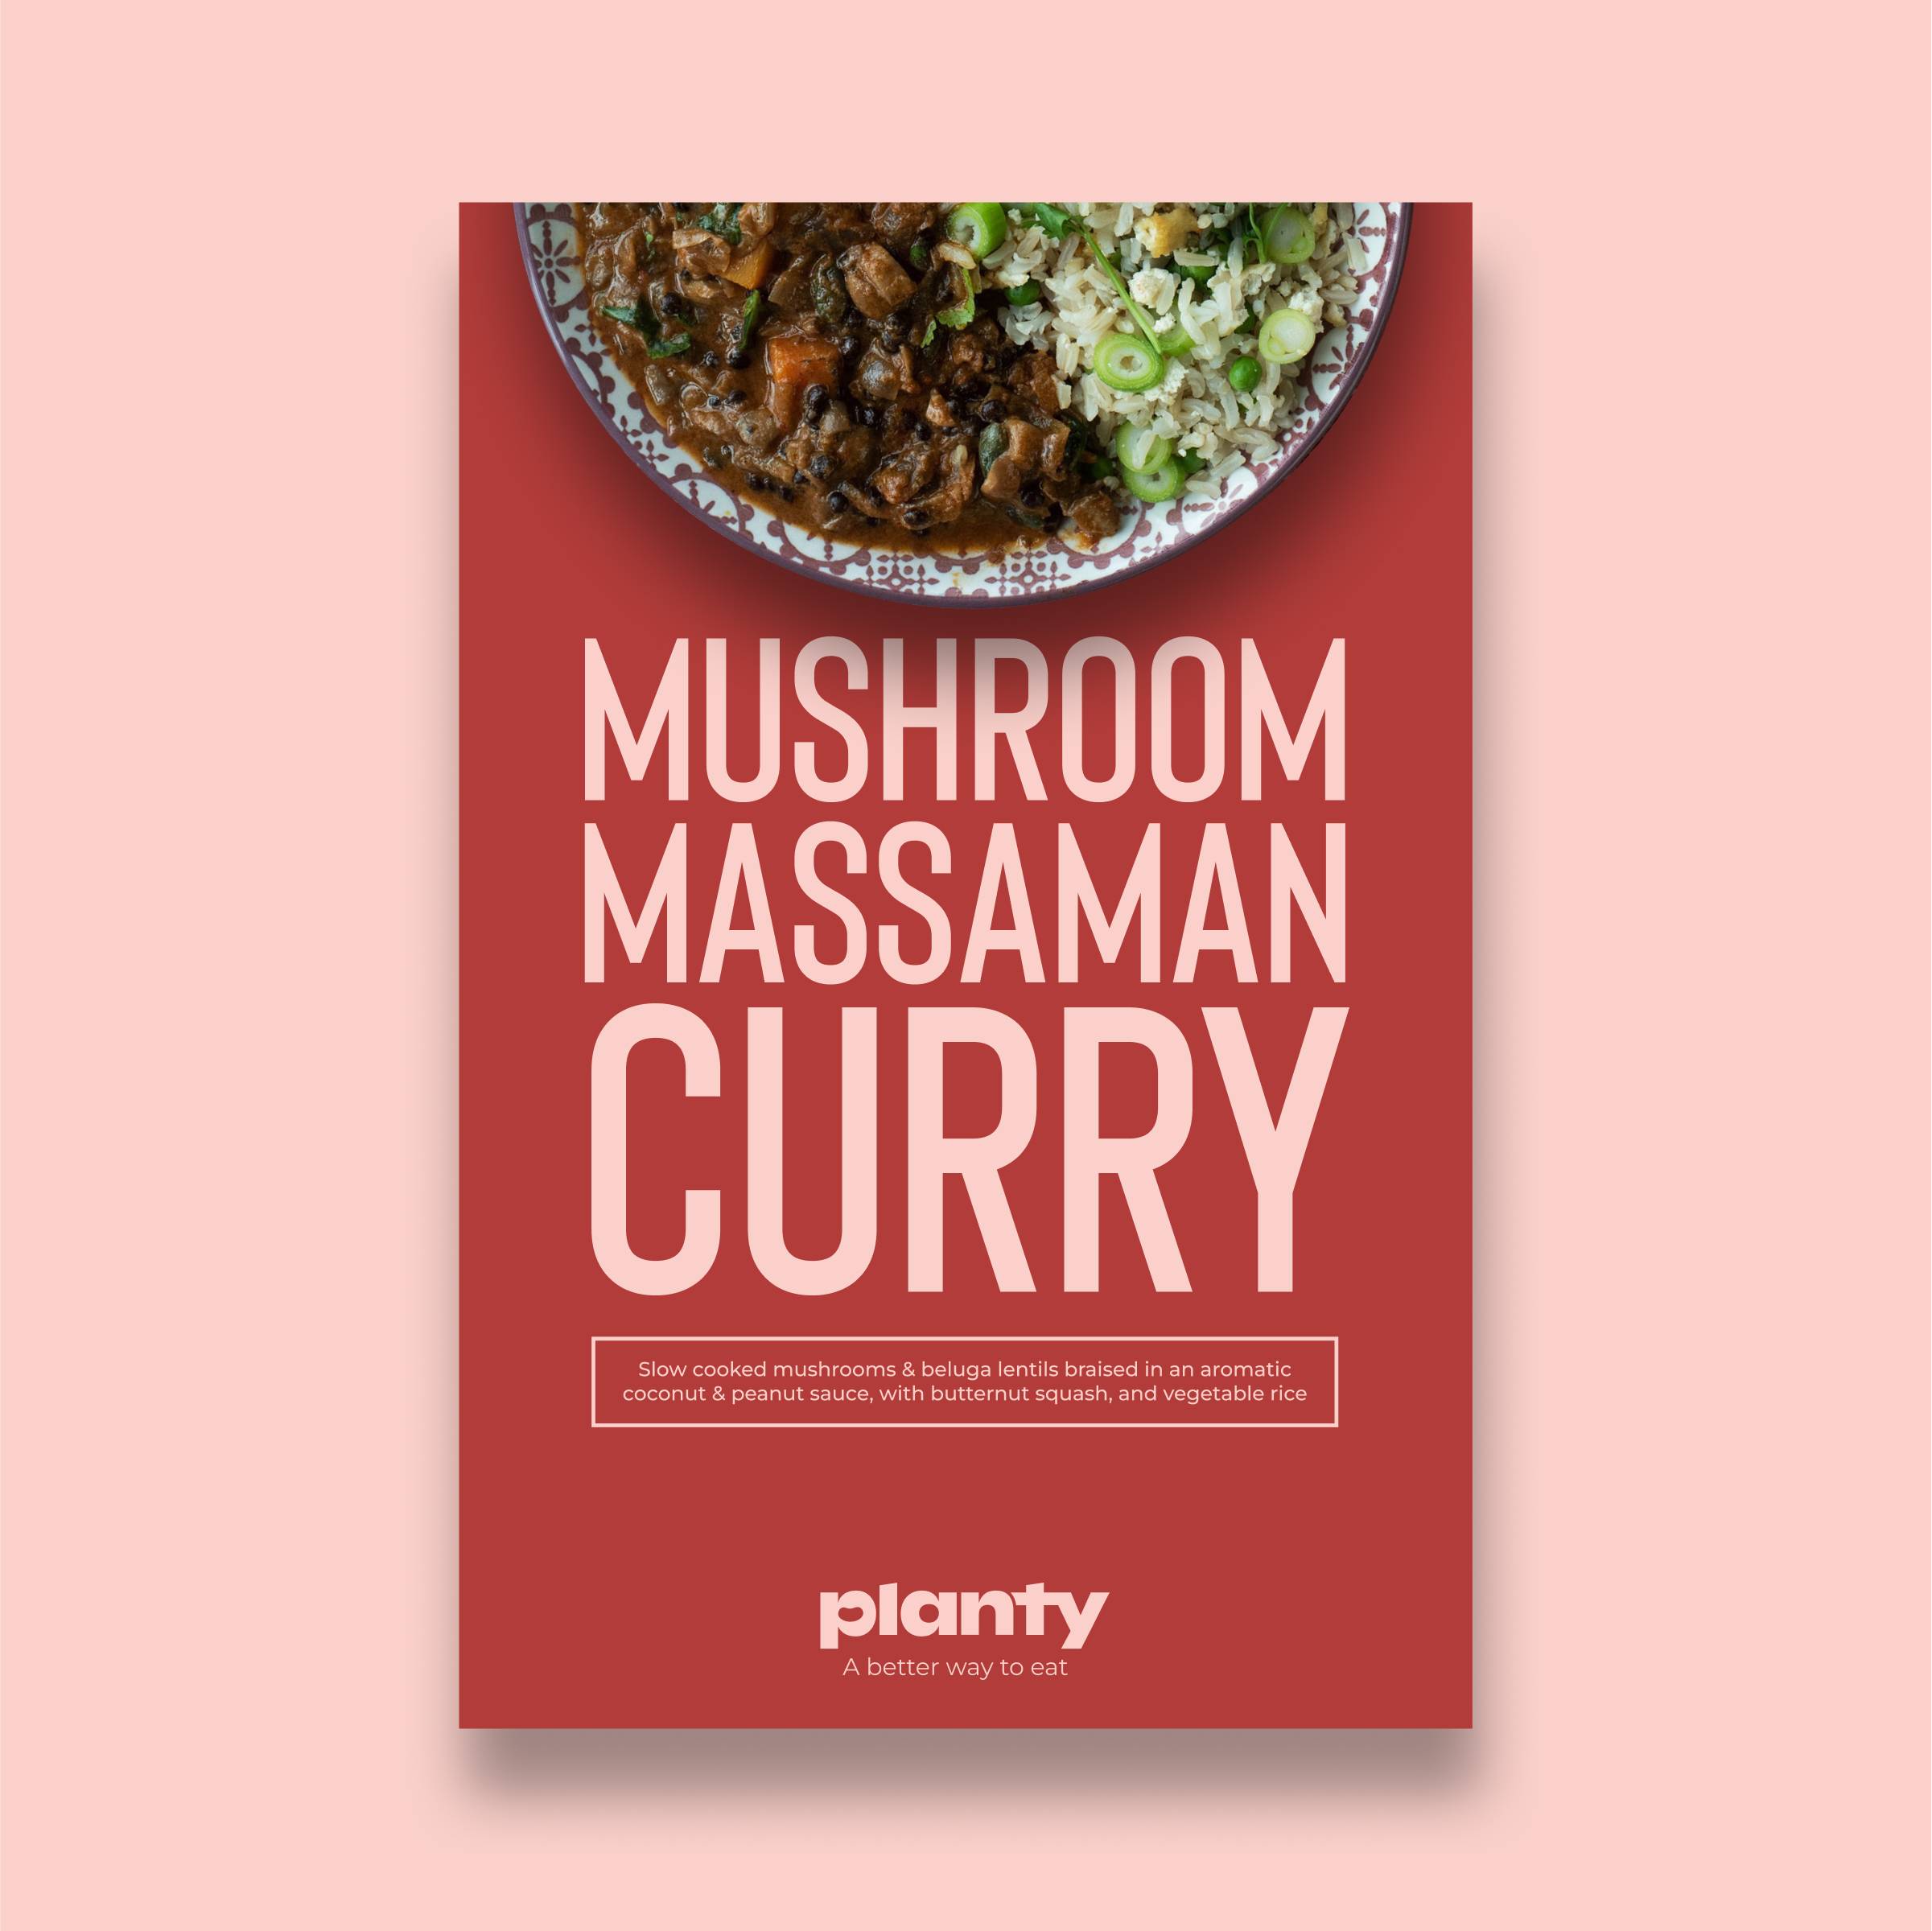 Mushroom Massaman Curry image 2